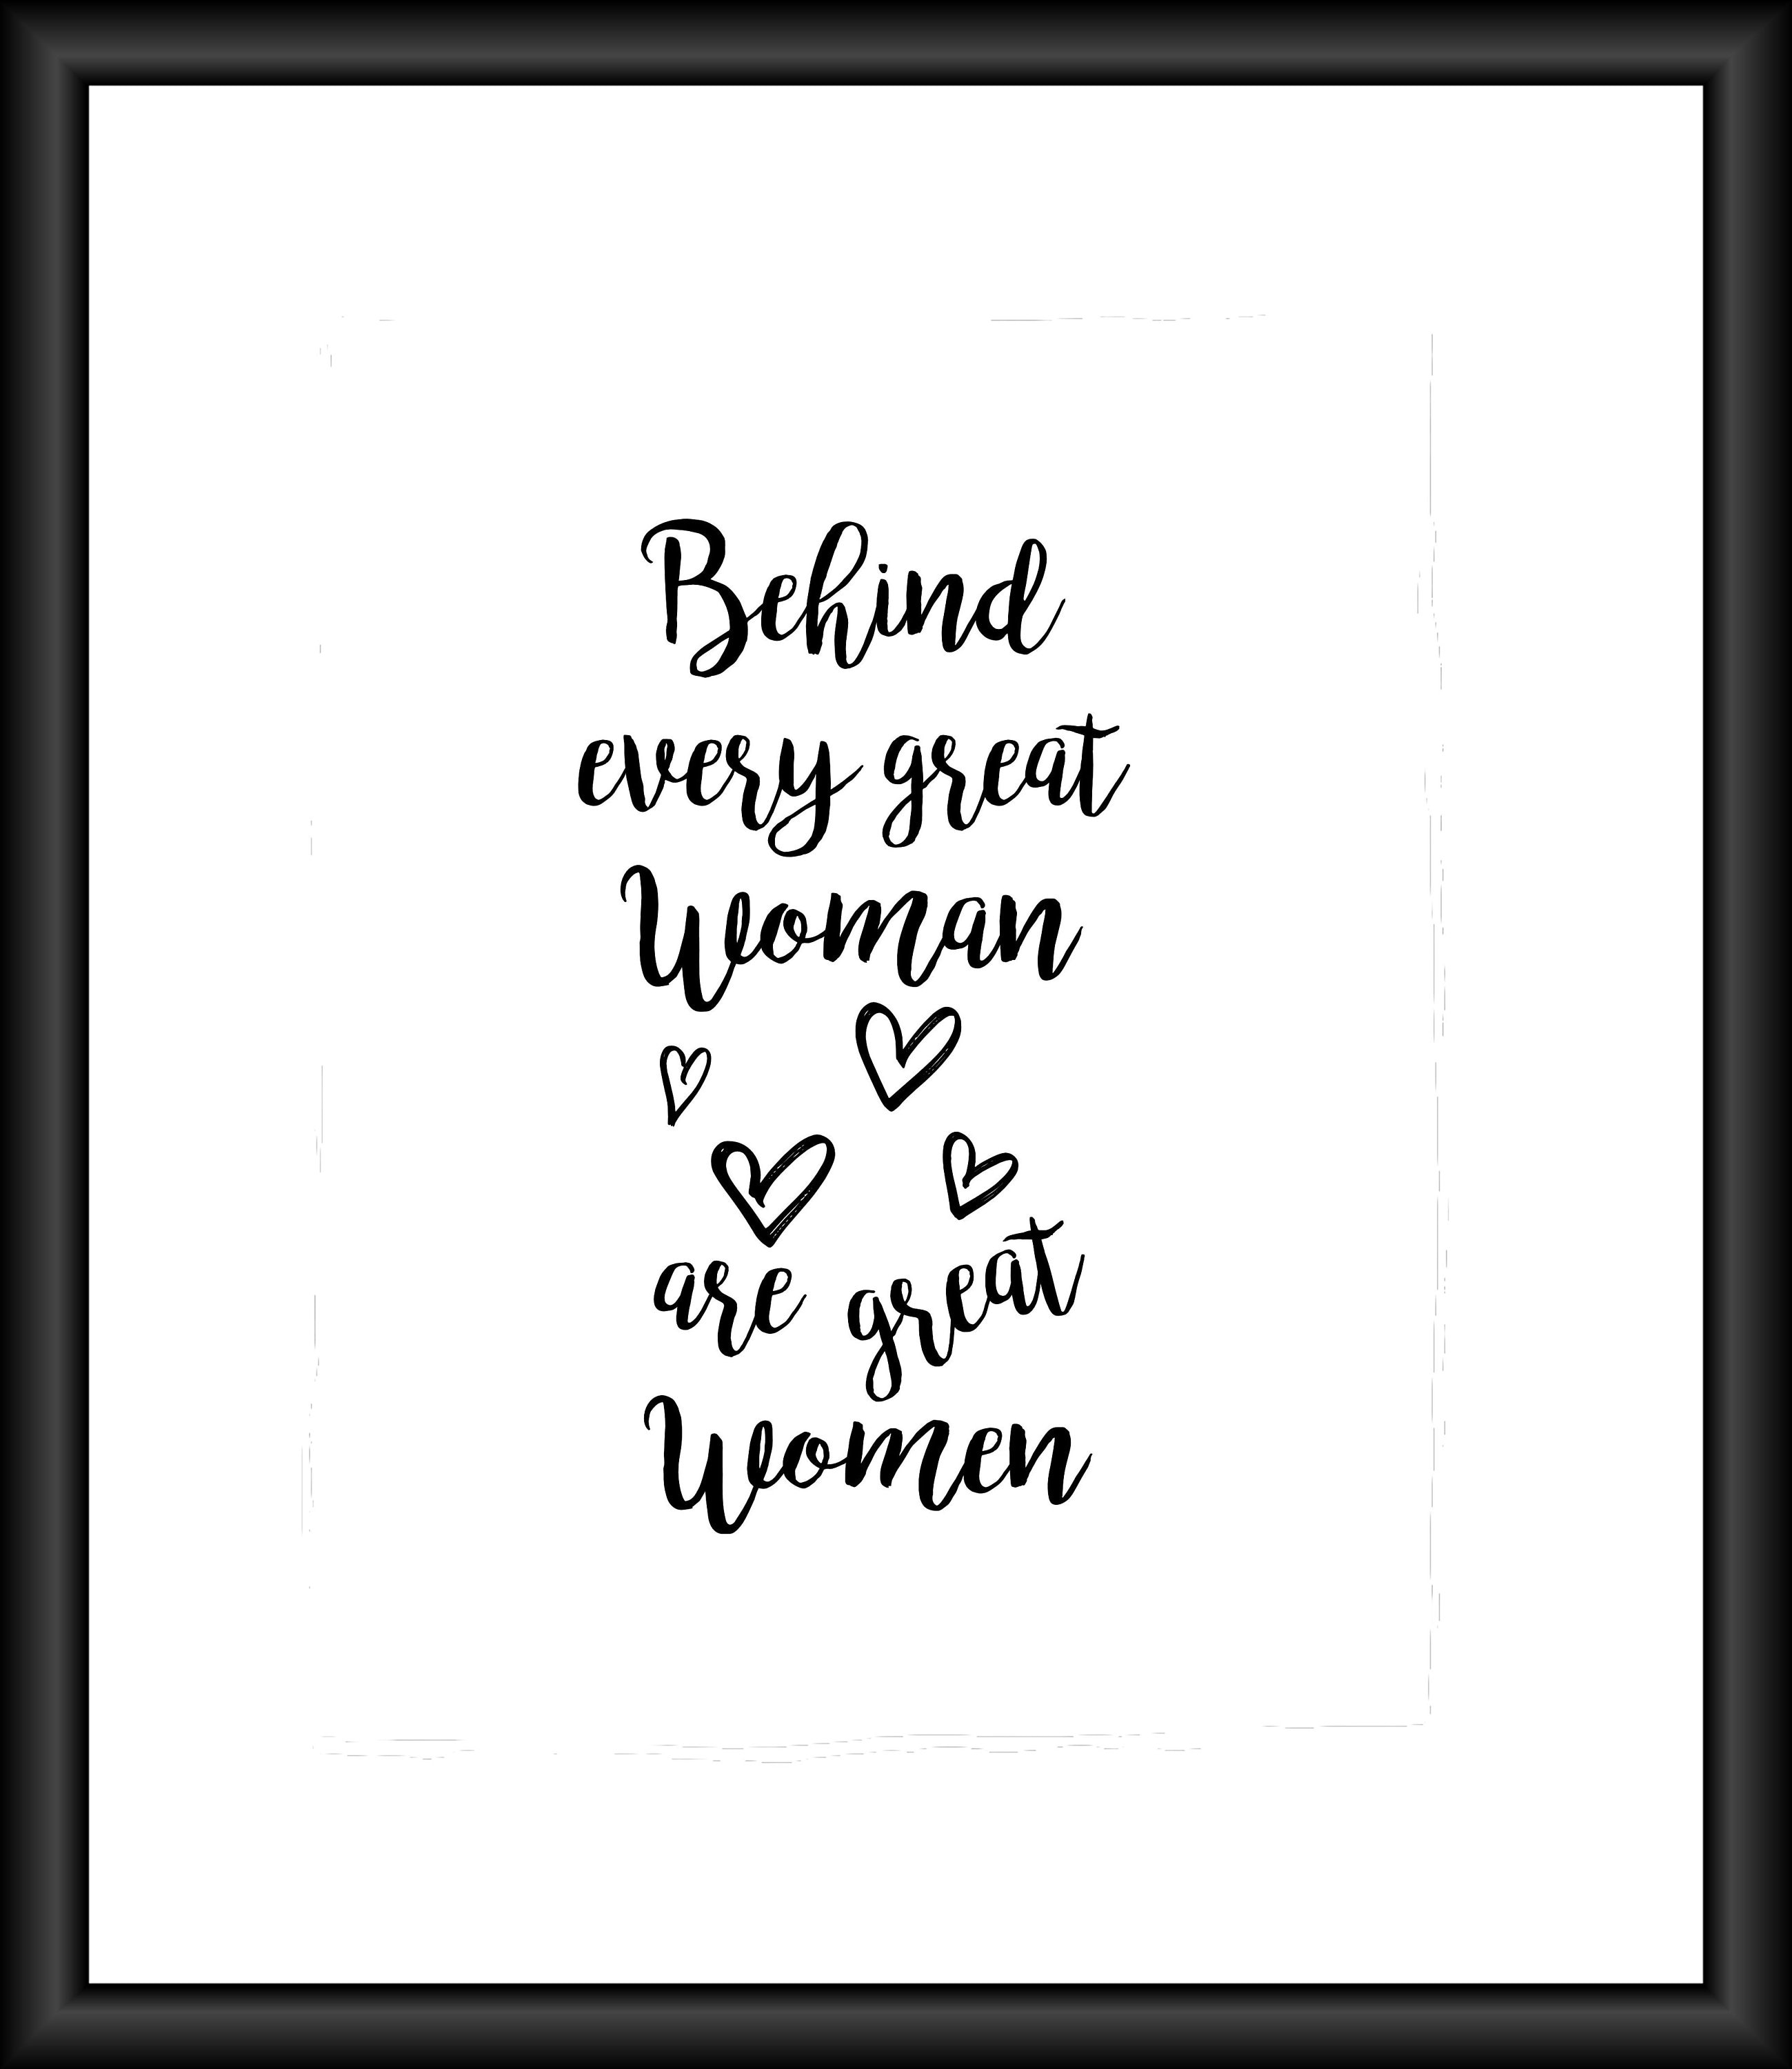 Empowering Women, Empowering Women Quotes, Women Supporting Women